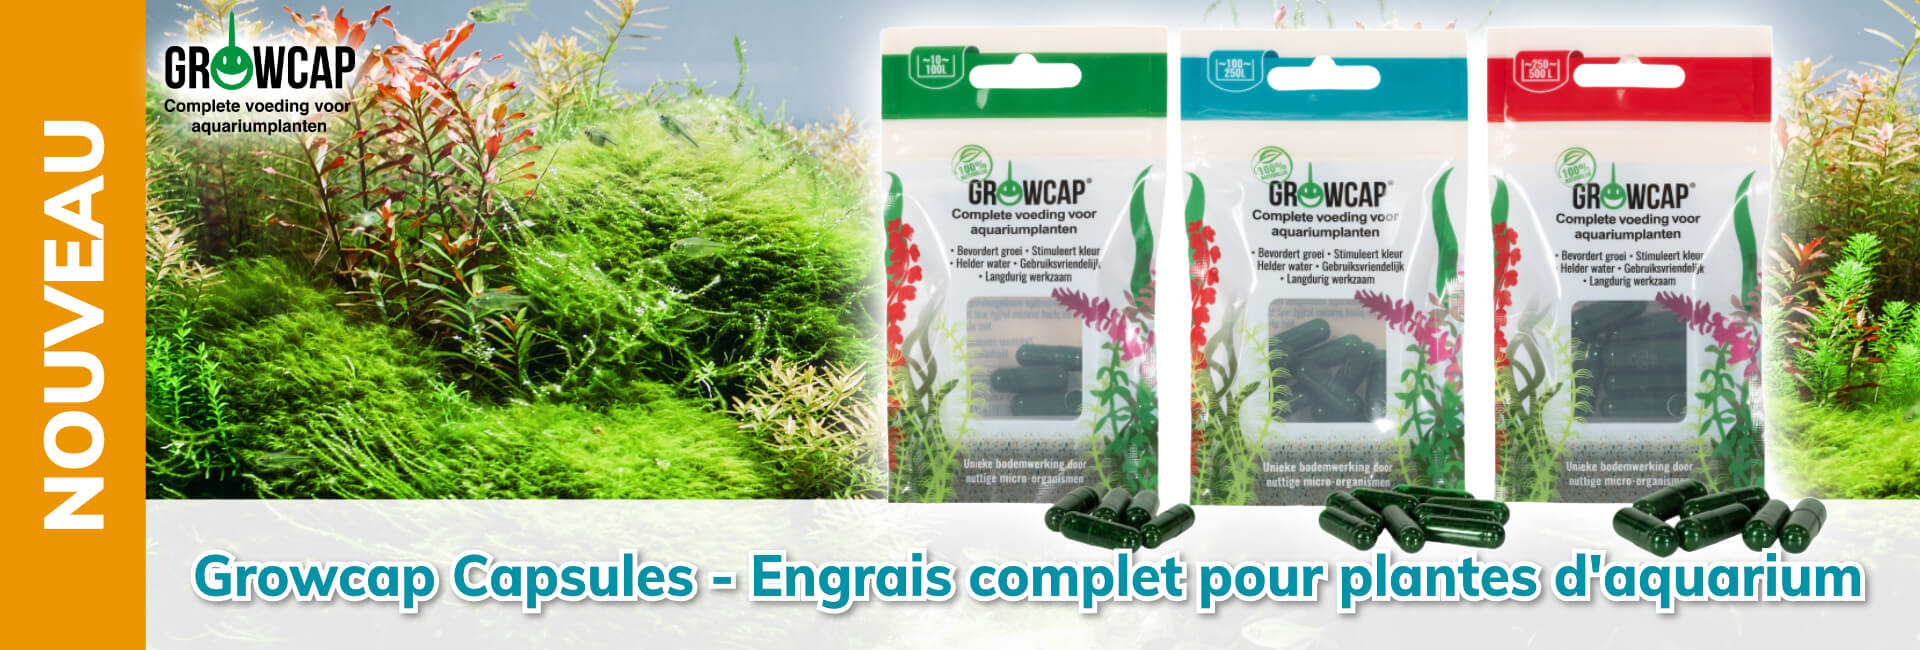 Growcap Capsules - Engrais complet pour plantes d'aquarium